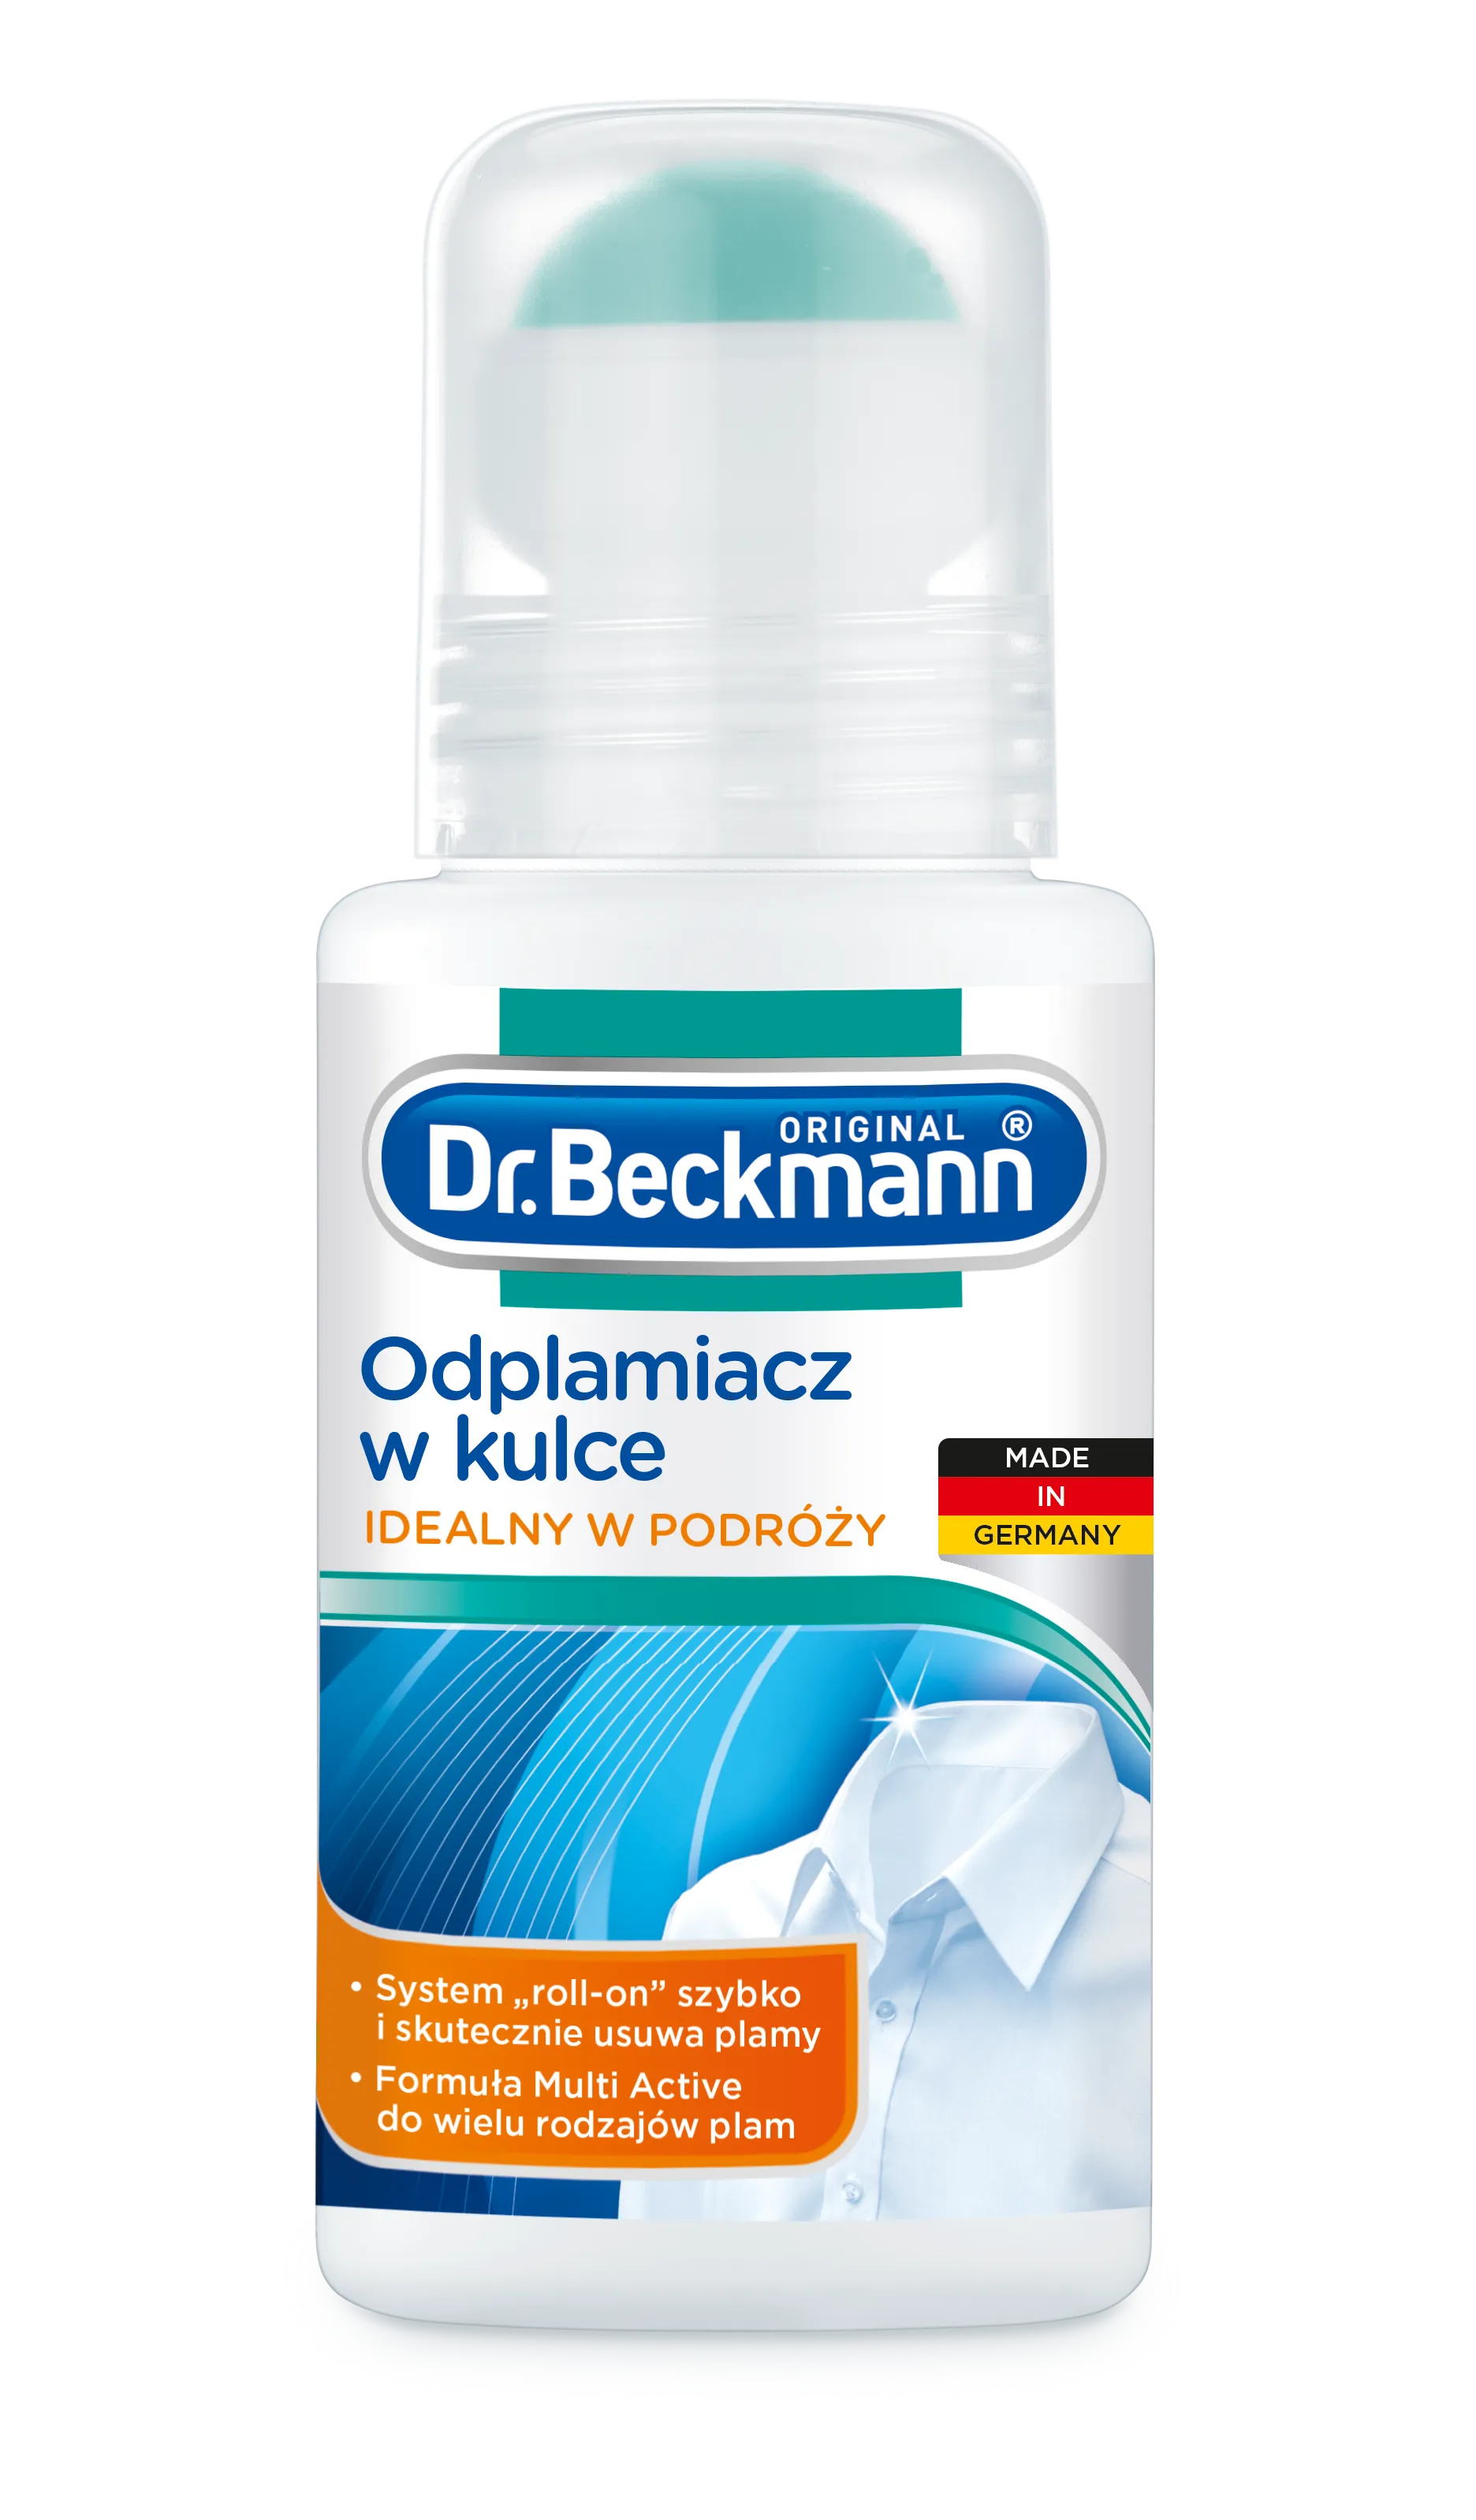 Dr. Beckmann odplamiacz w kulce, 75 ml